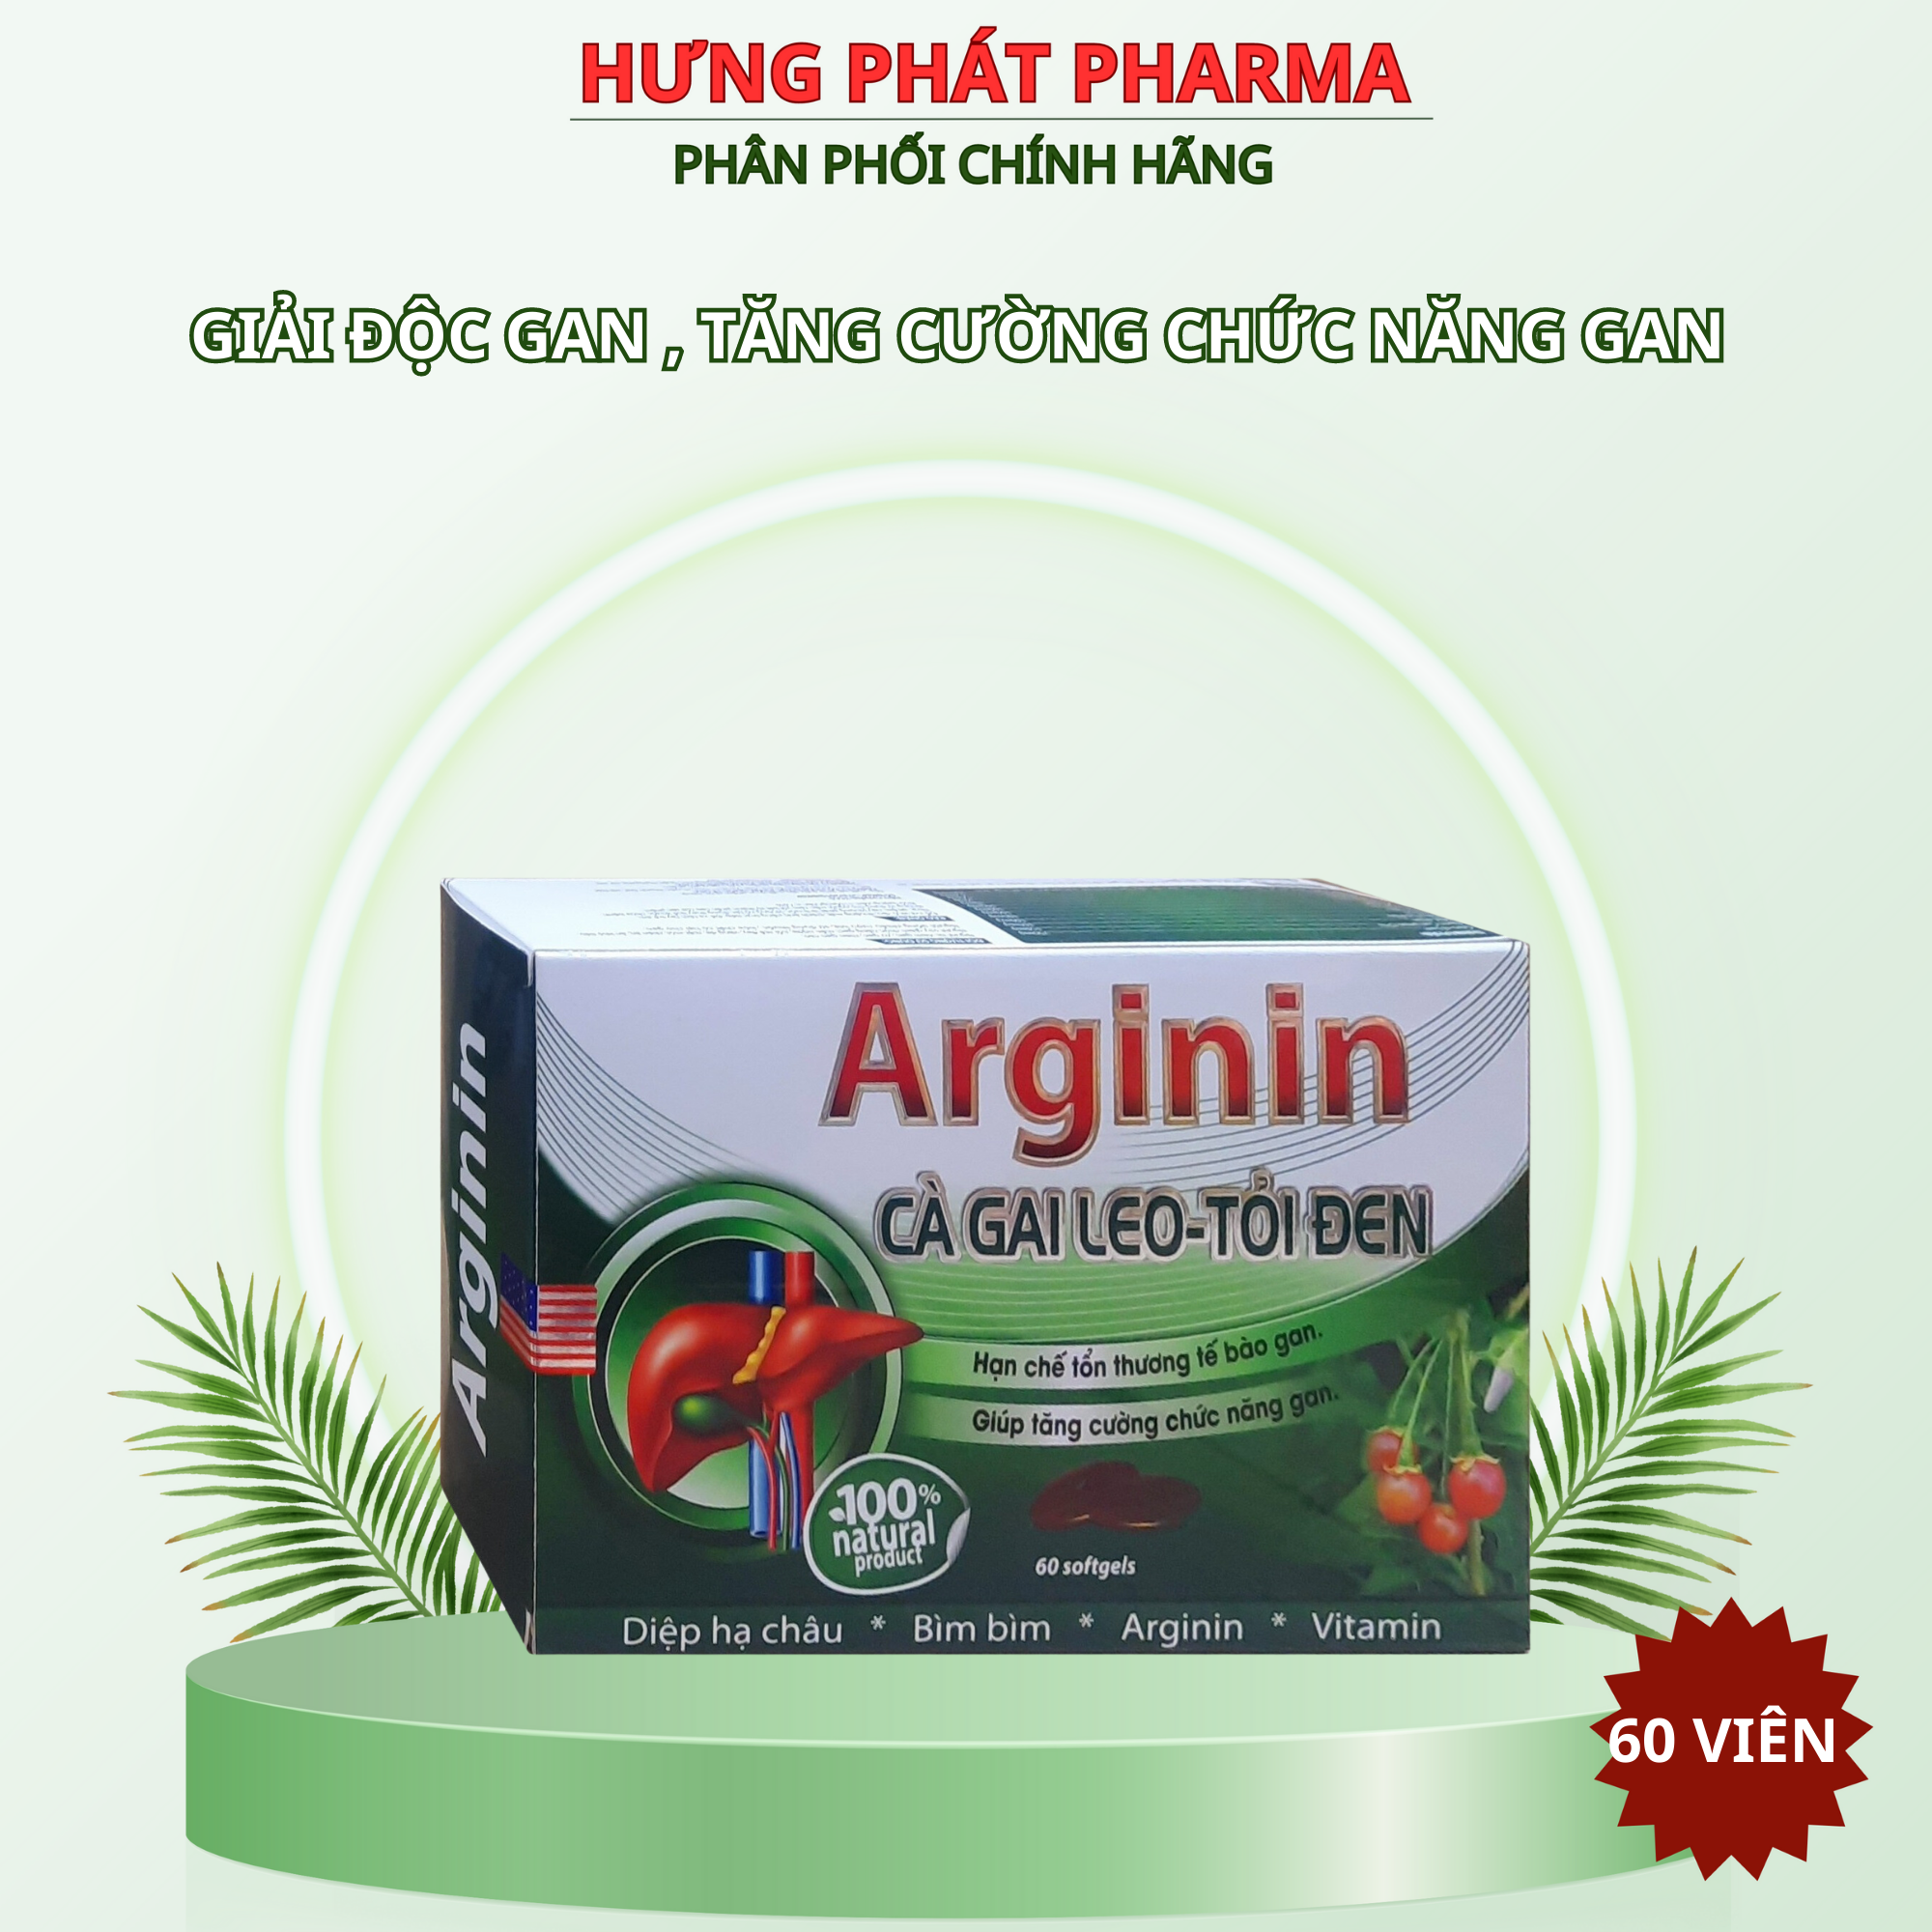 Viên uống Arginine cà gai leo xạ đen tăng cường chức năng gan, giải độc gan